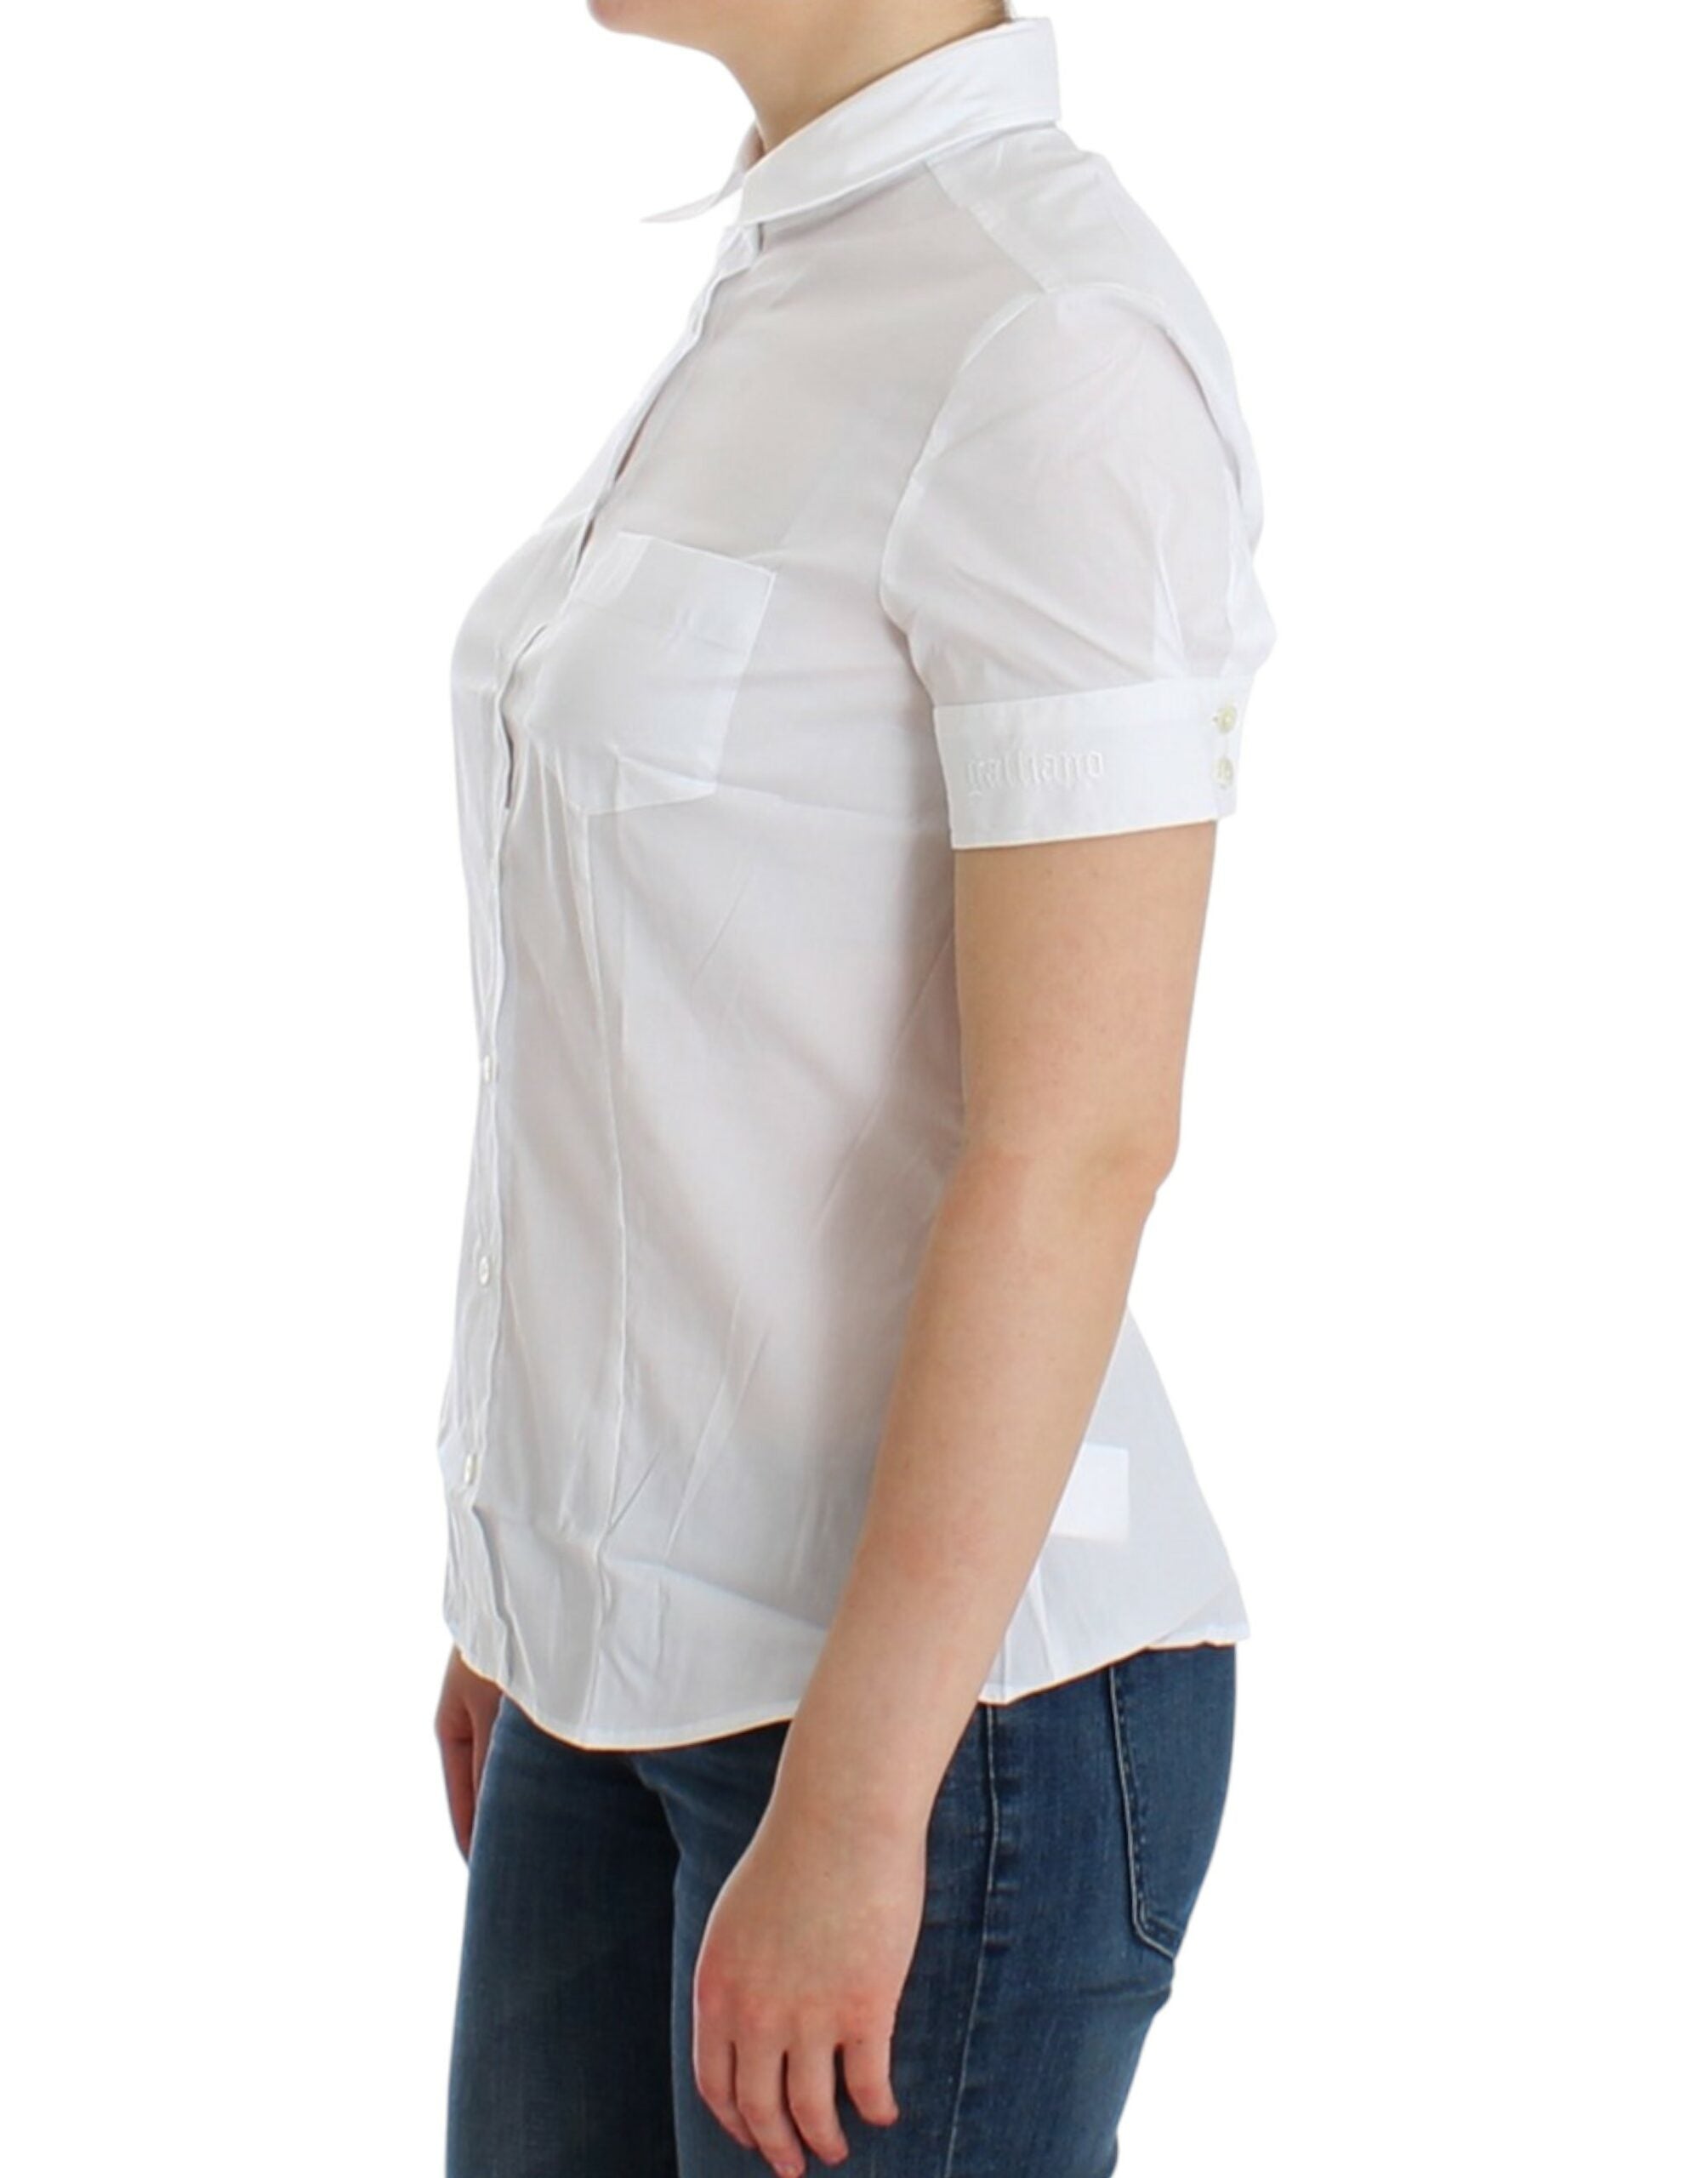 John Galliano White Cotton Shirt Top